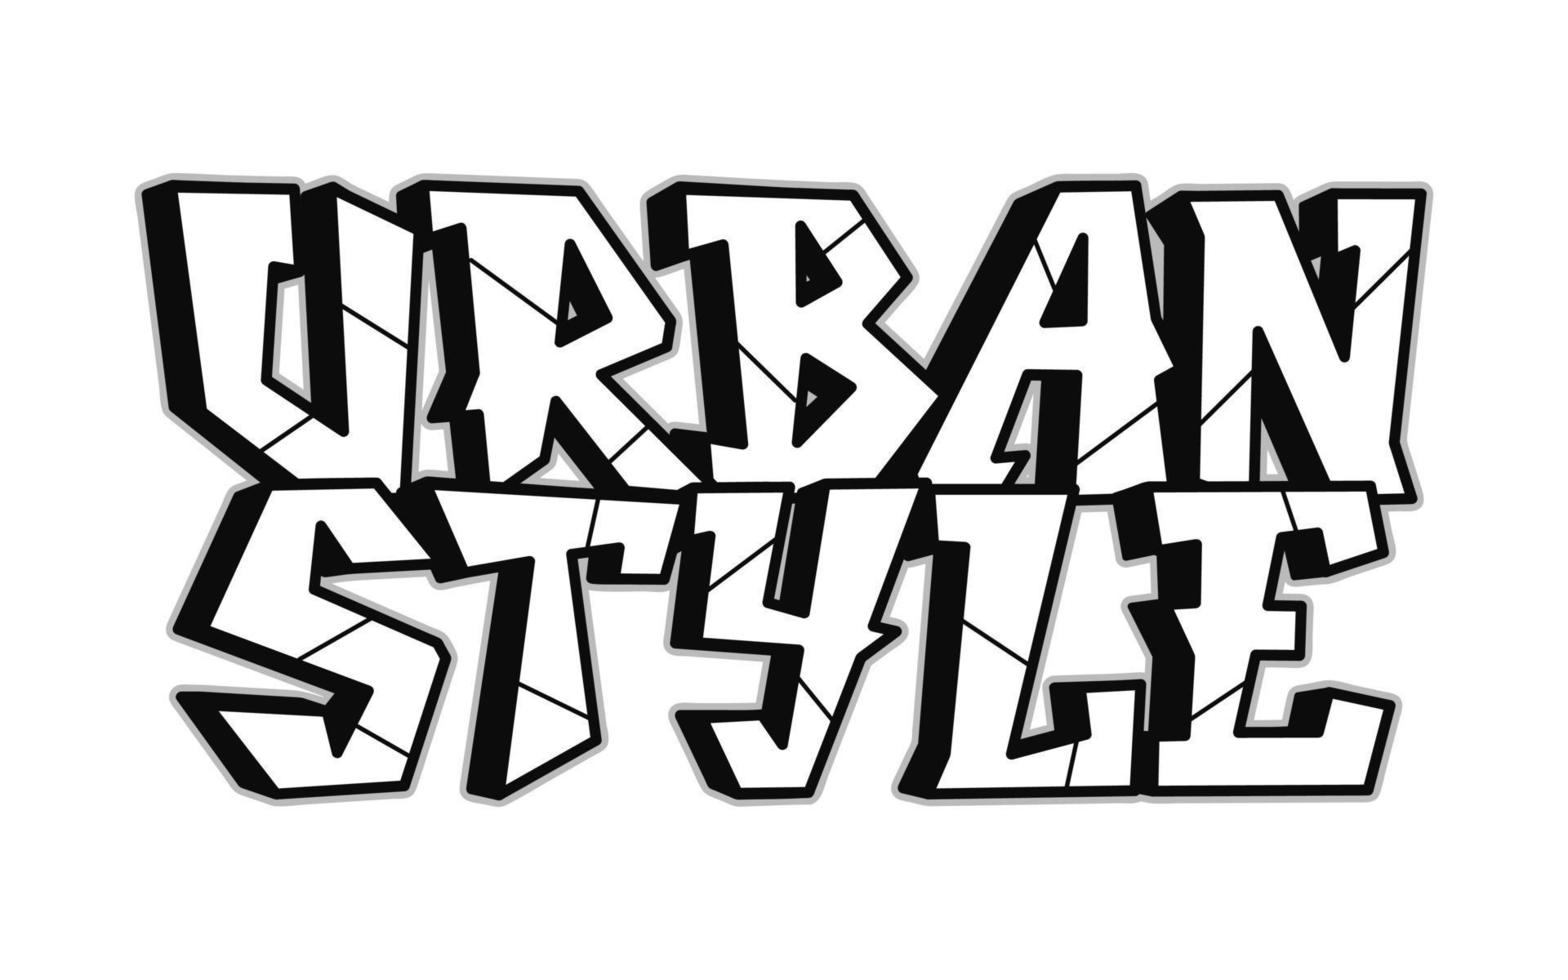 stedelijk stijl woord graffiti stijl letters.vector hand- getrokken tekening tekenfilm logo illustratie. grappig koel stedelijk stijl brieven, mode, graffiti stijl afdrukken voor t-shirt, poster concept vector